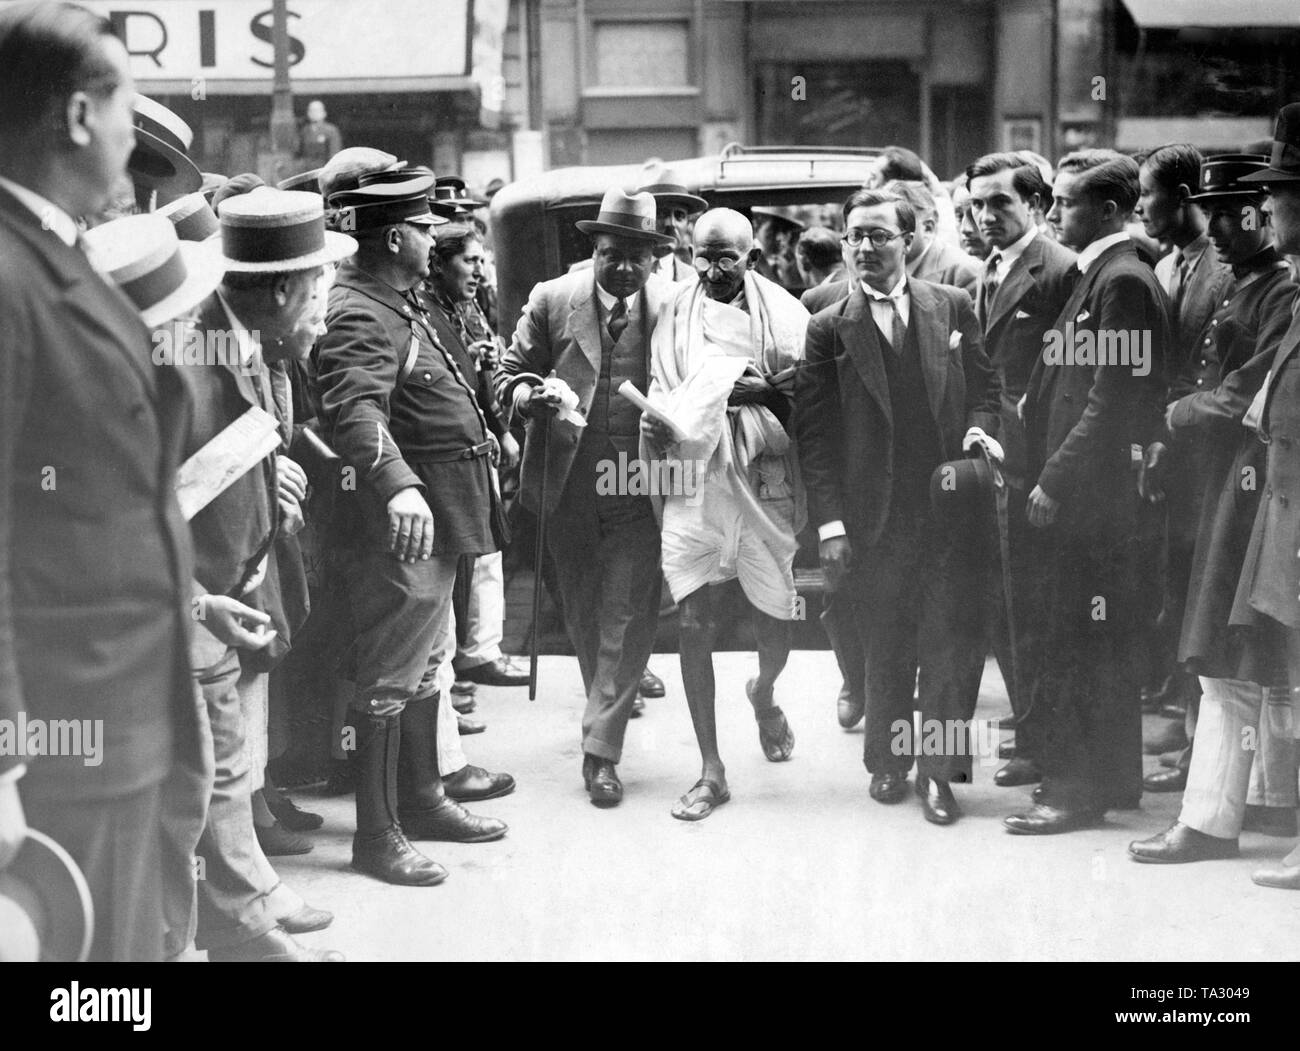 L'homme politique indien Mahatma Gandhi à Marseille. Il est en route pour Londres pour la Conférence de la Table ronde des Indiens. Gandhi a été nommé plusieurs fois pour le prix Nobel de la paix au cours de sa vie. Banque D'Images